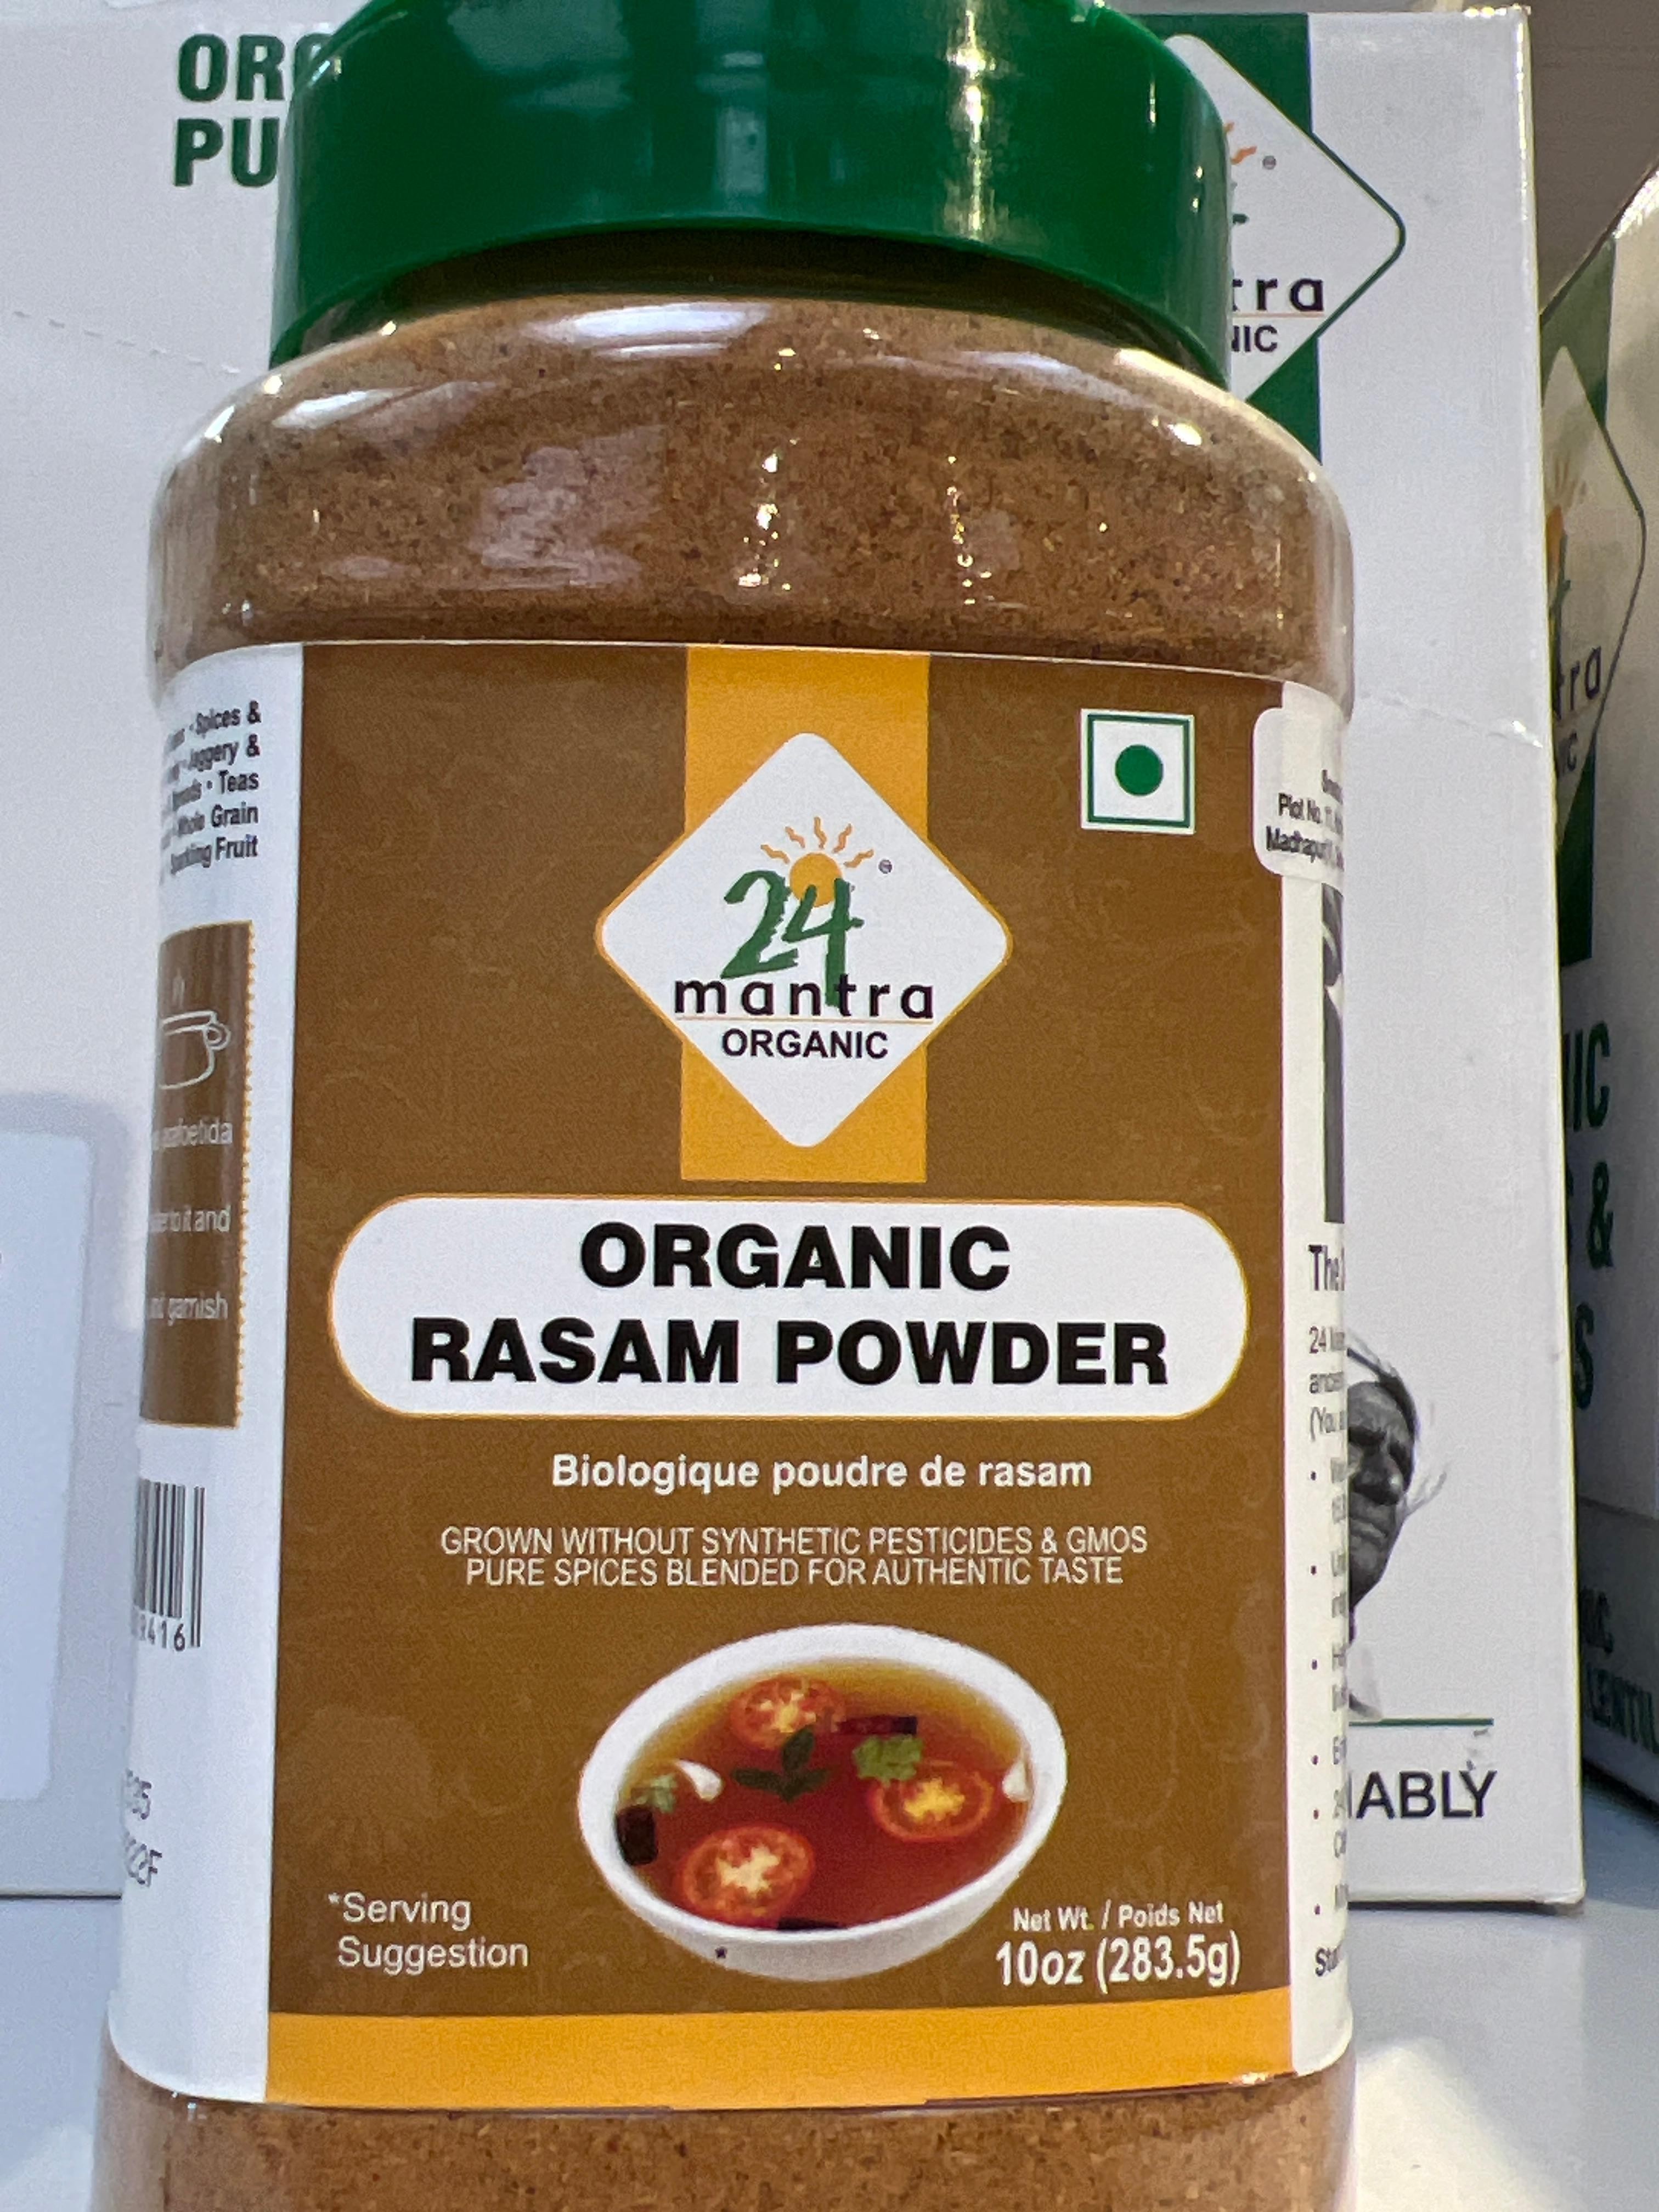 24 Mantra Organic Rasam Powder Jar 10oz